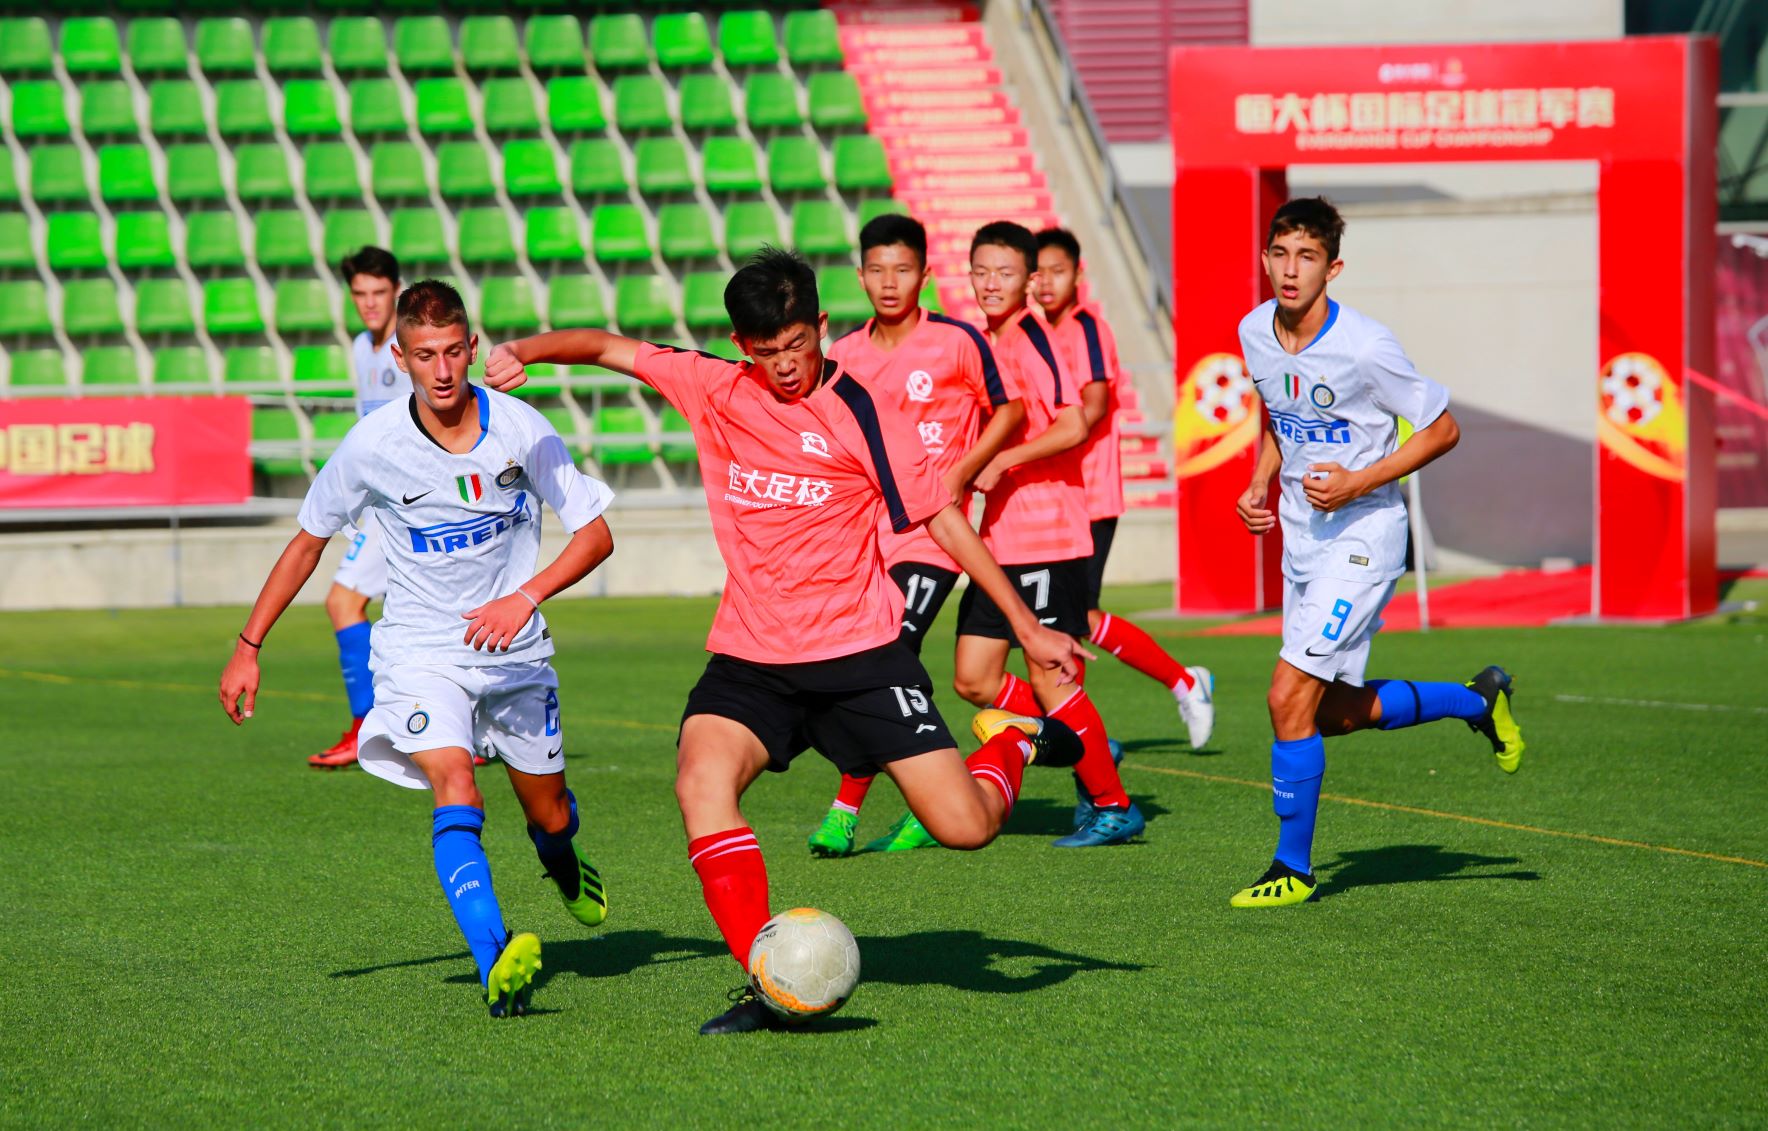 2018年8月，恒大足球学校西班牙分校03梯队与西班牙赫塔菲俱乐部梯队进行比赛.jpg